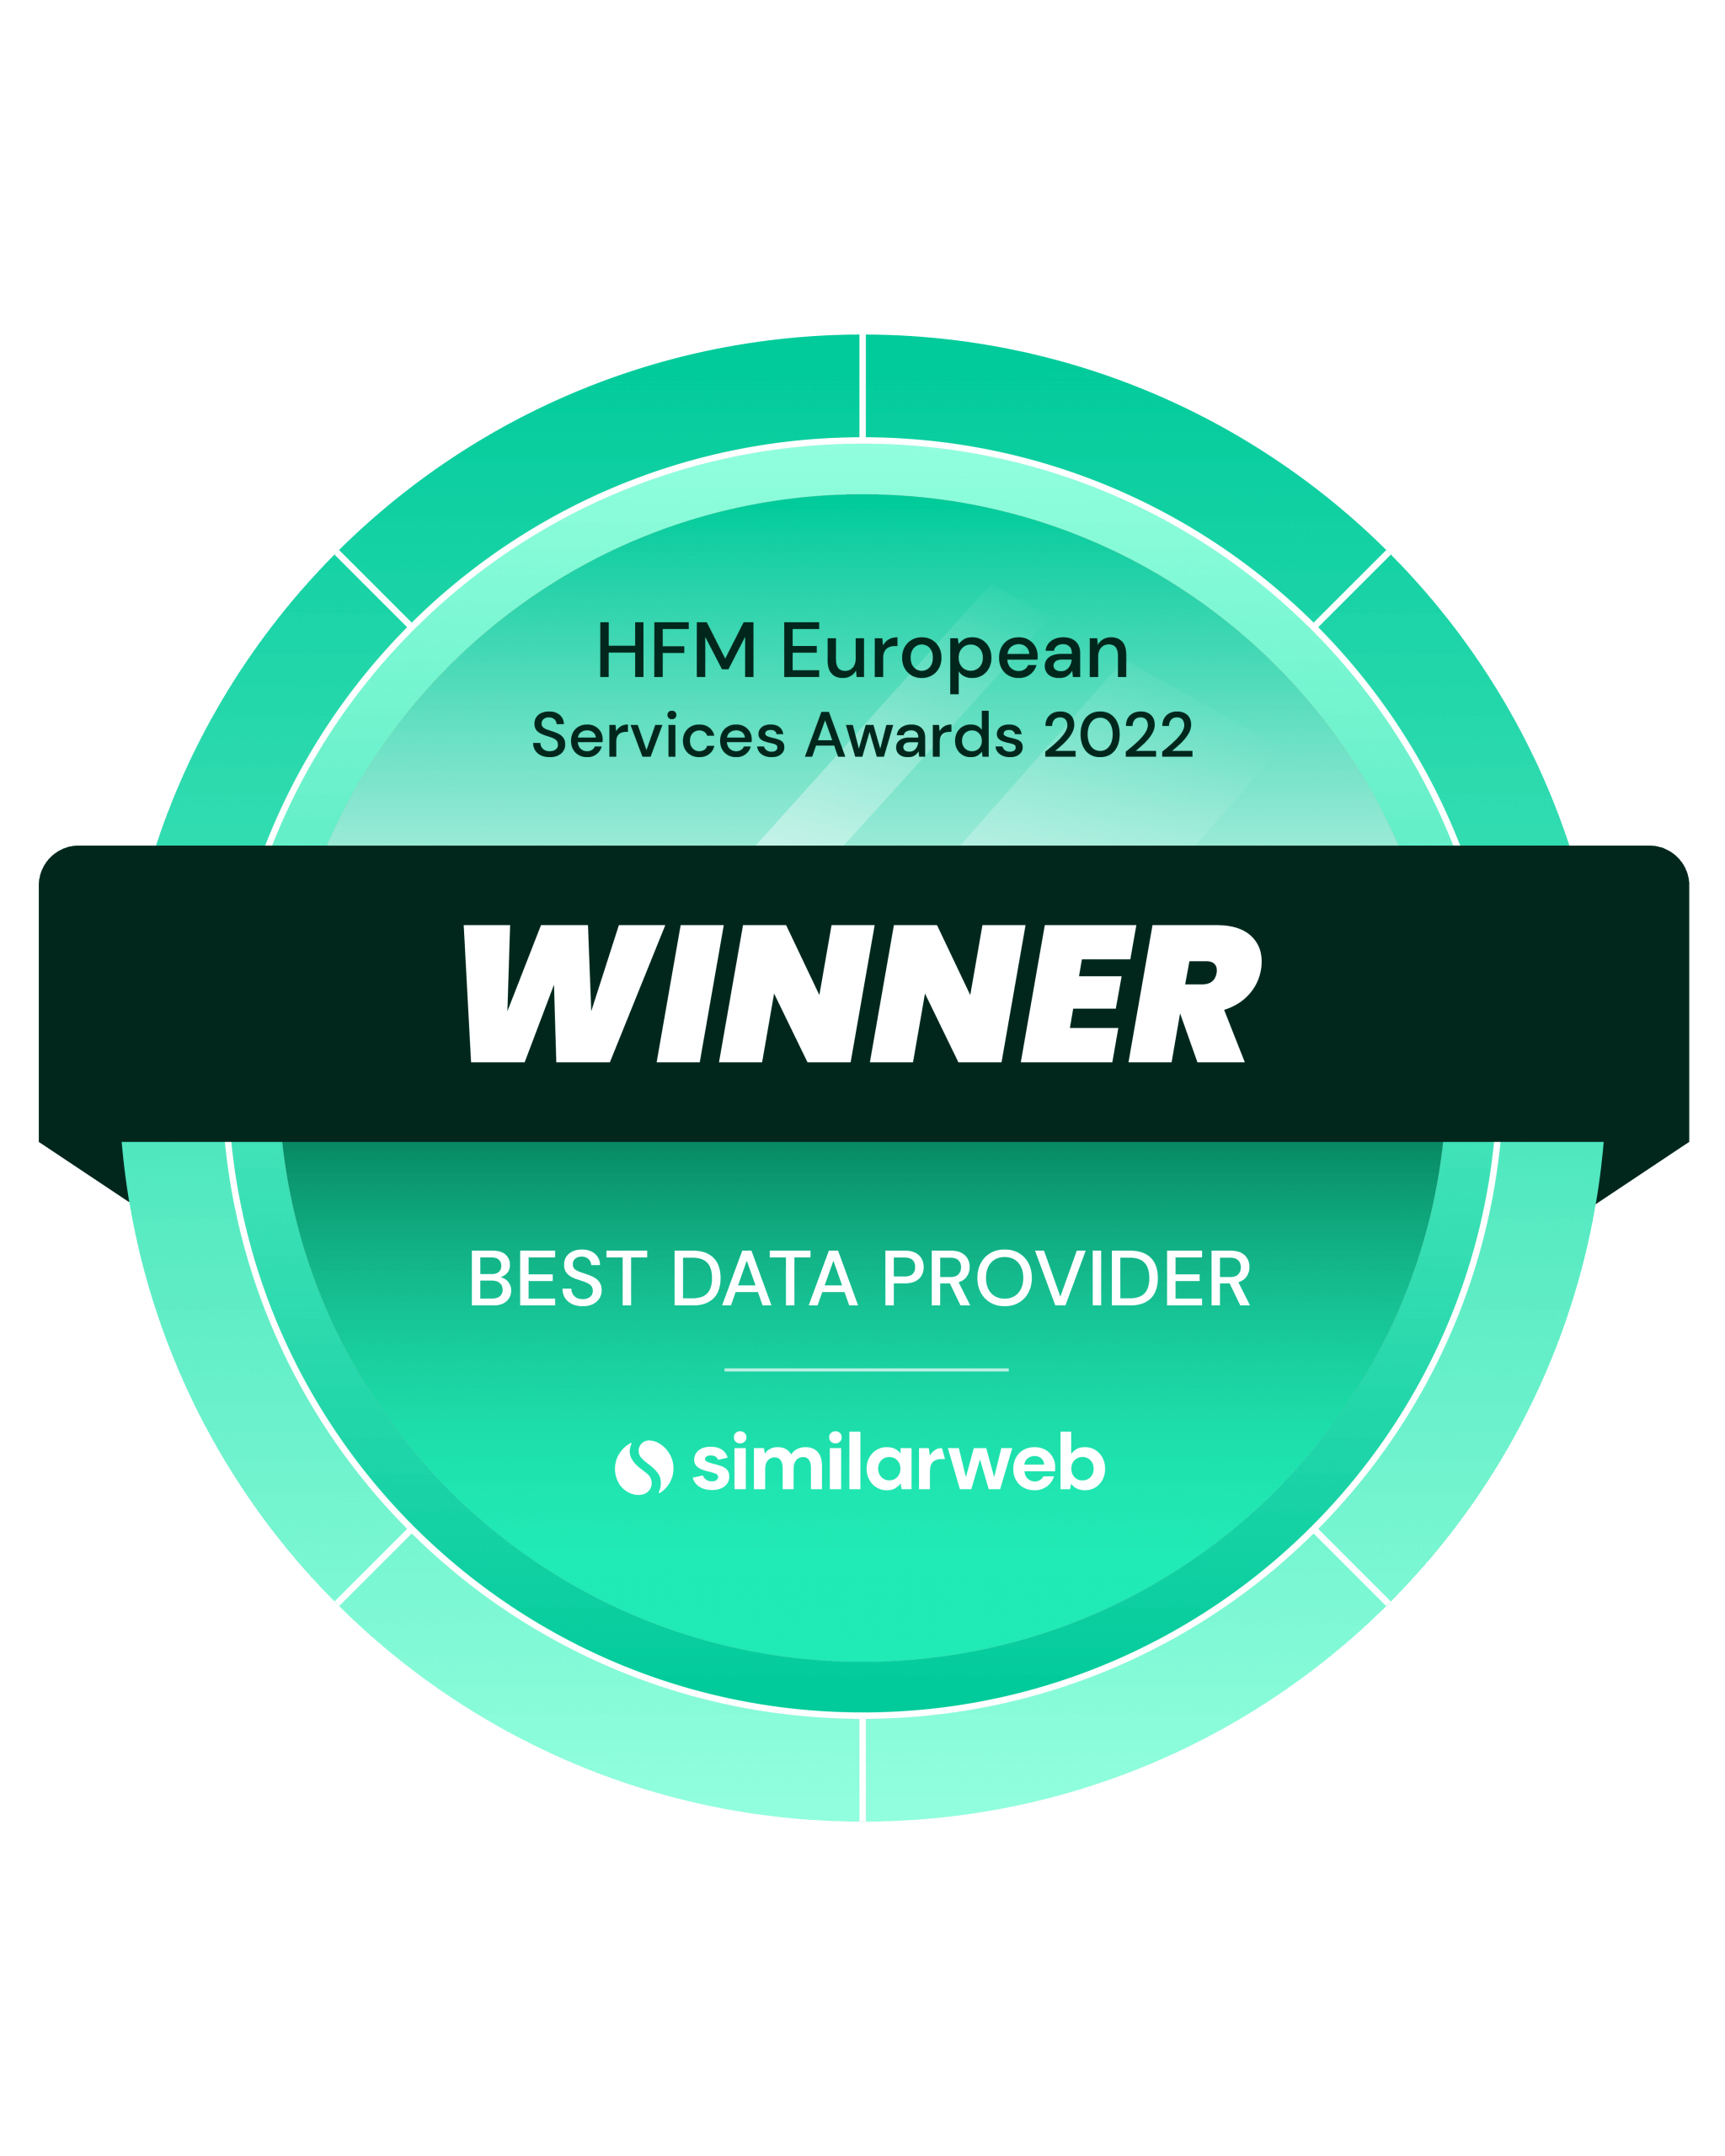 HFM European Services Awards 2022 Winner - Best Data Provider